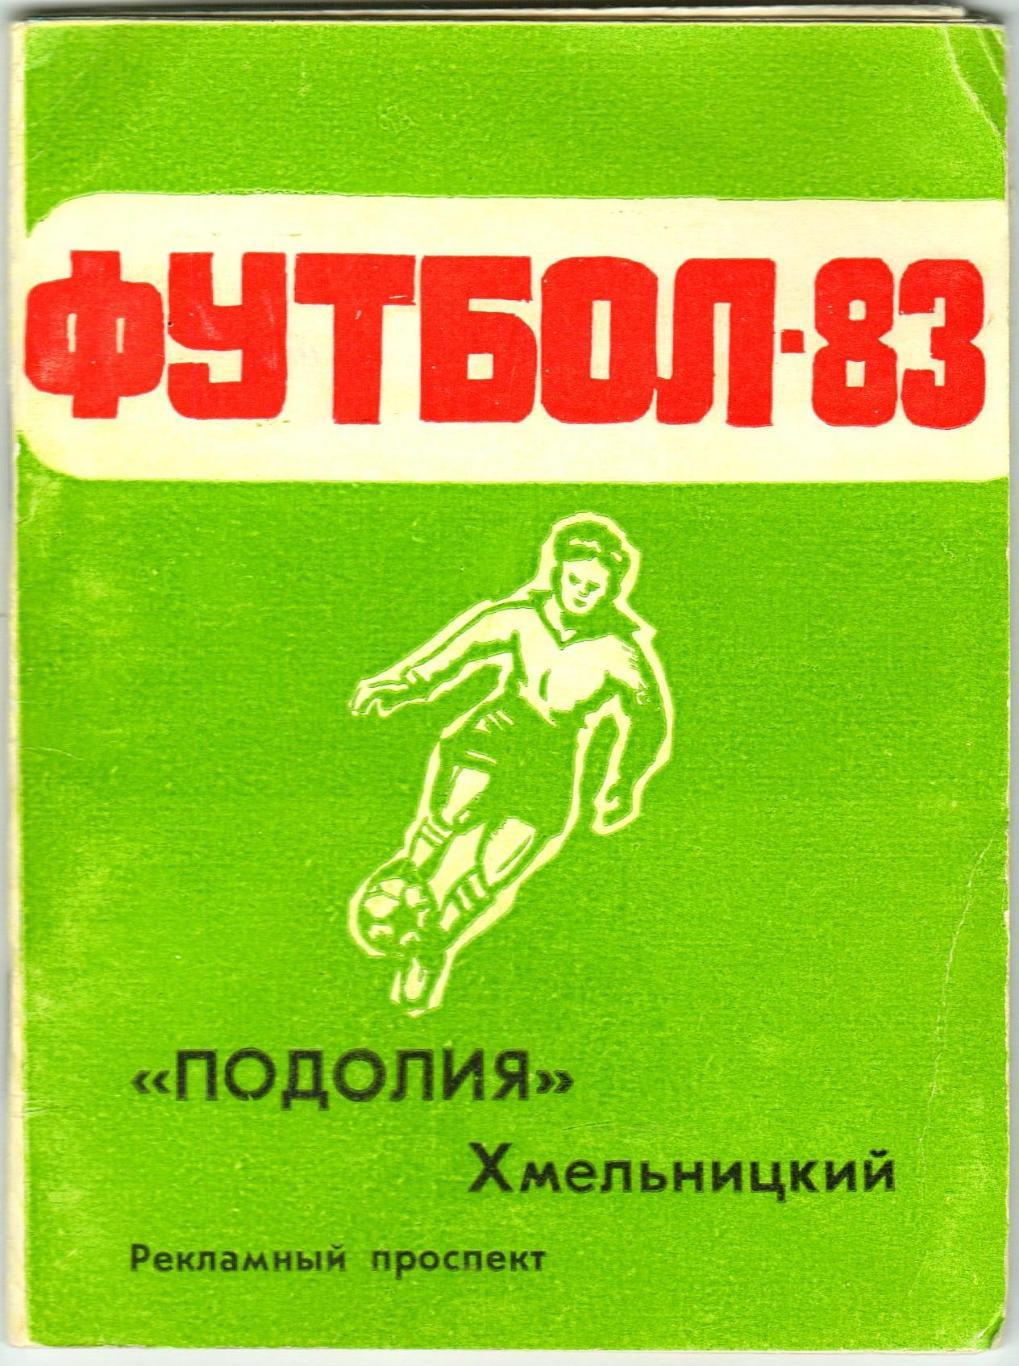 Футбол 1983 Хмельницкий